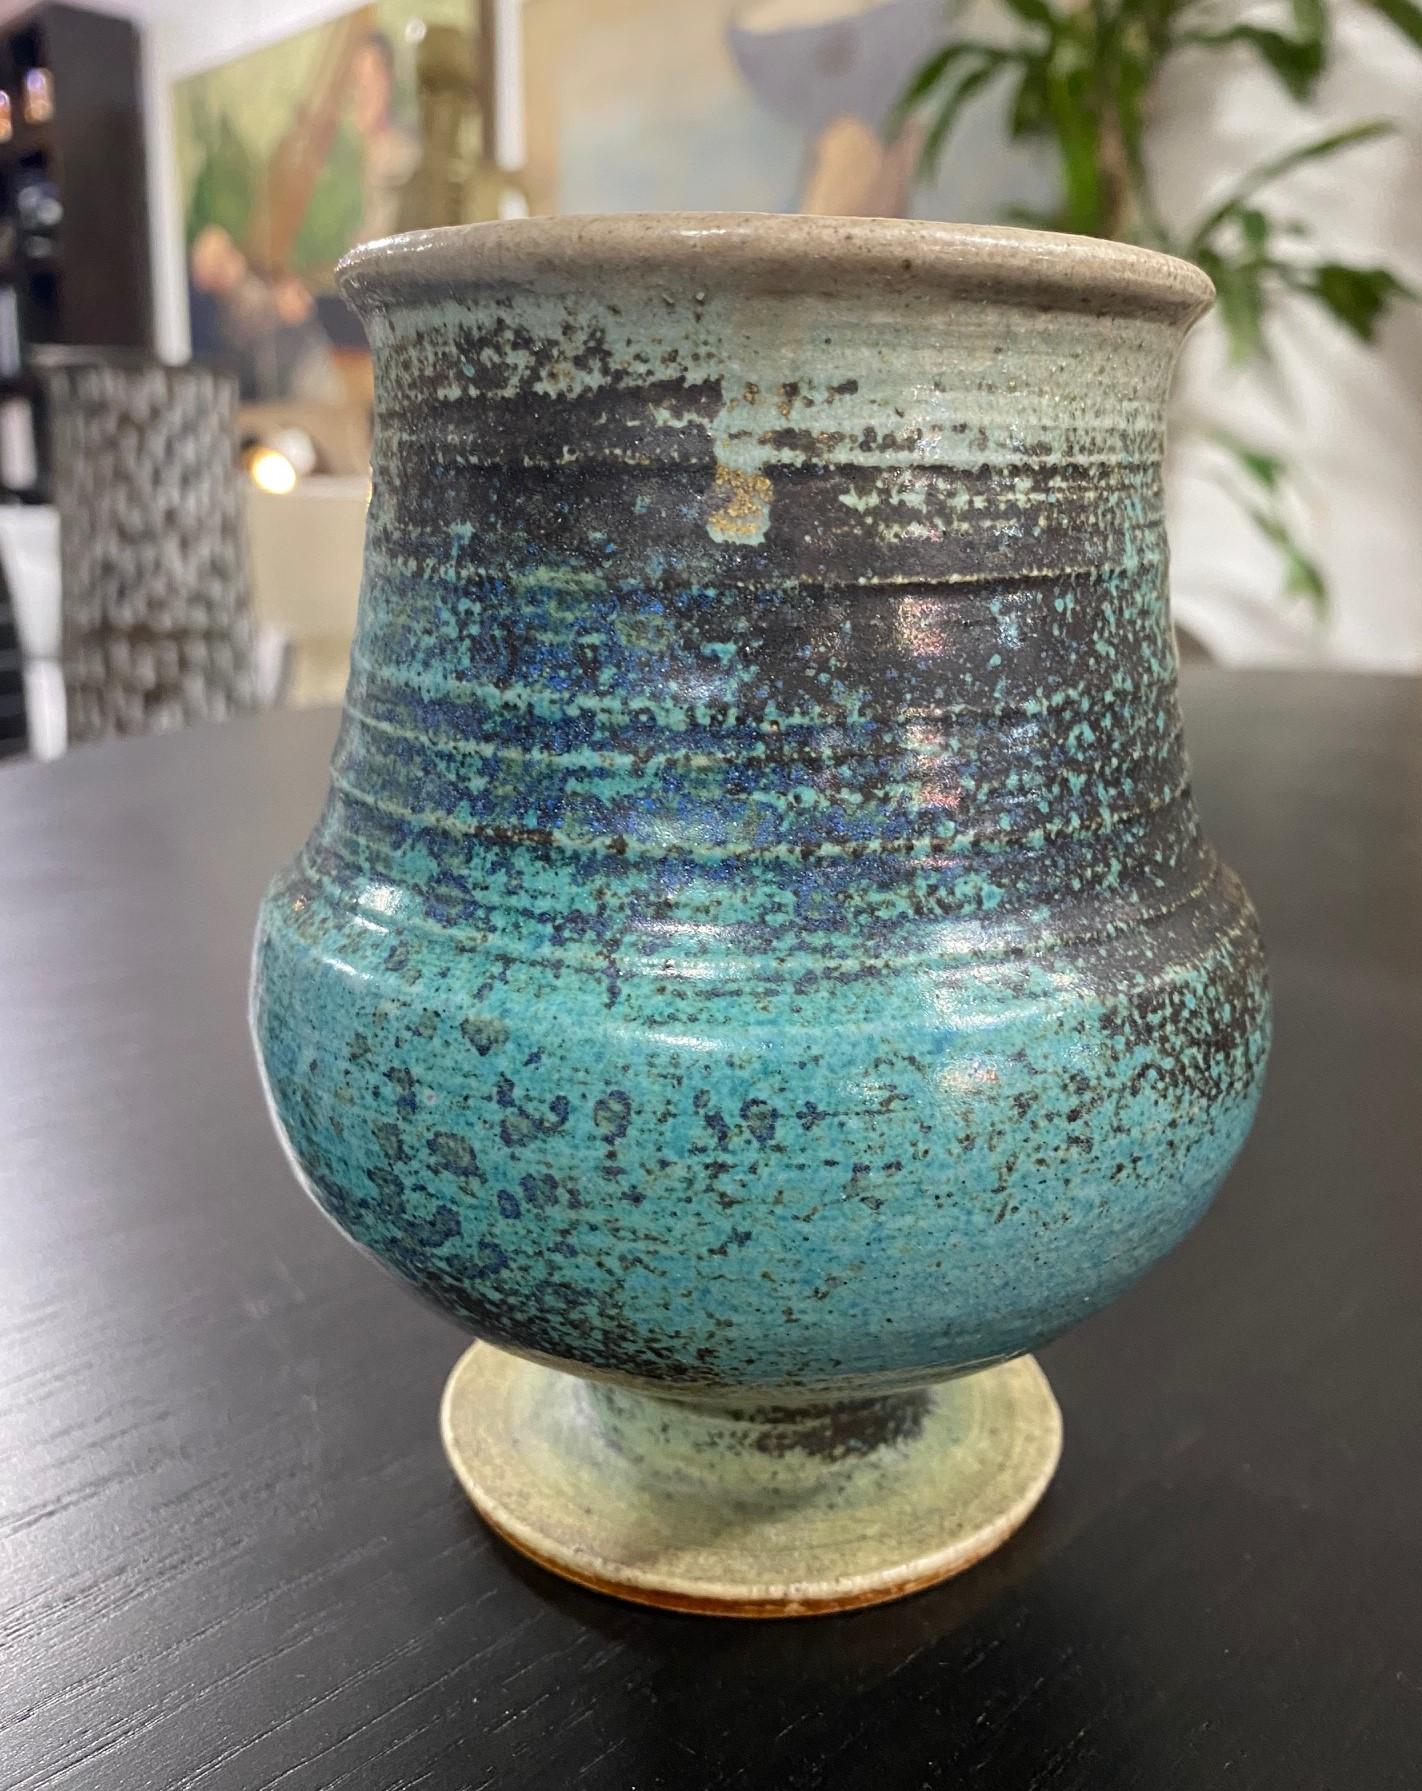 Un merveilleux vase à pied en grès émaillé scandinave par Annikki Hovisaari pour Arabia Finland. Cette pièce présente une glaçure turquoise/bleu marine et une forme de gourde. 

Hovisaari a commencé à travailler chez Arabia Finland au début des